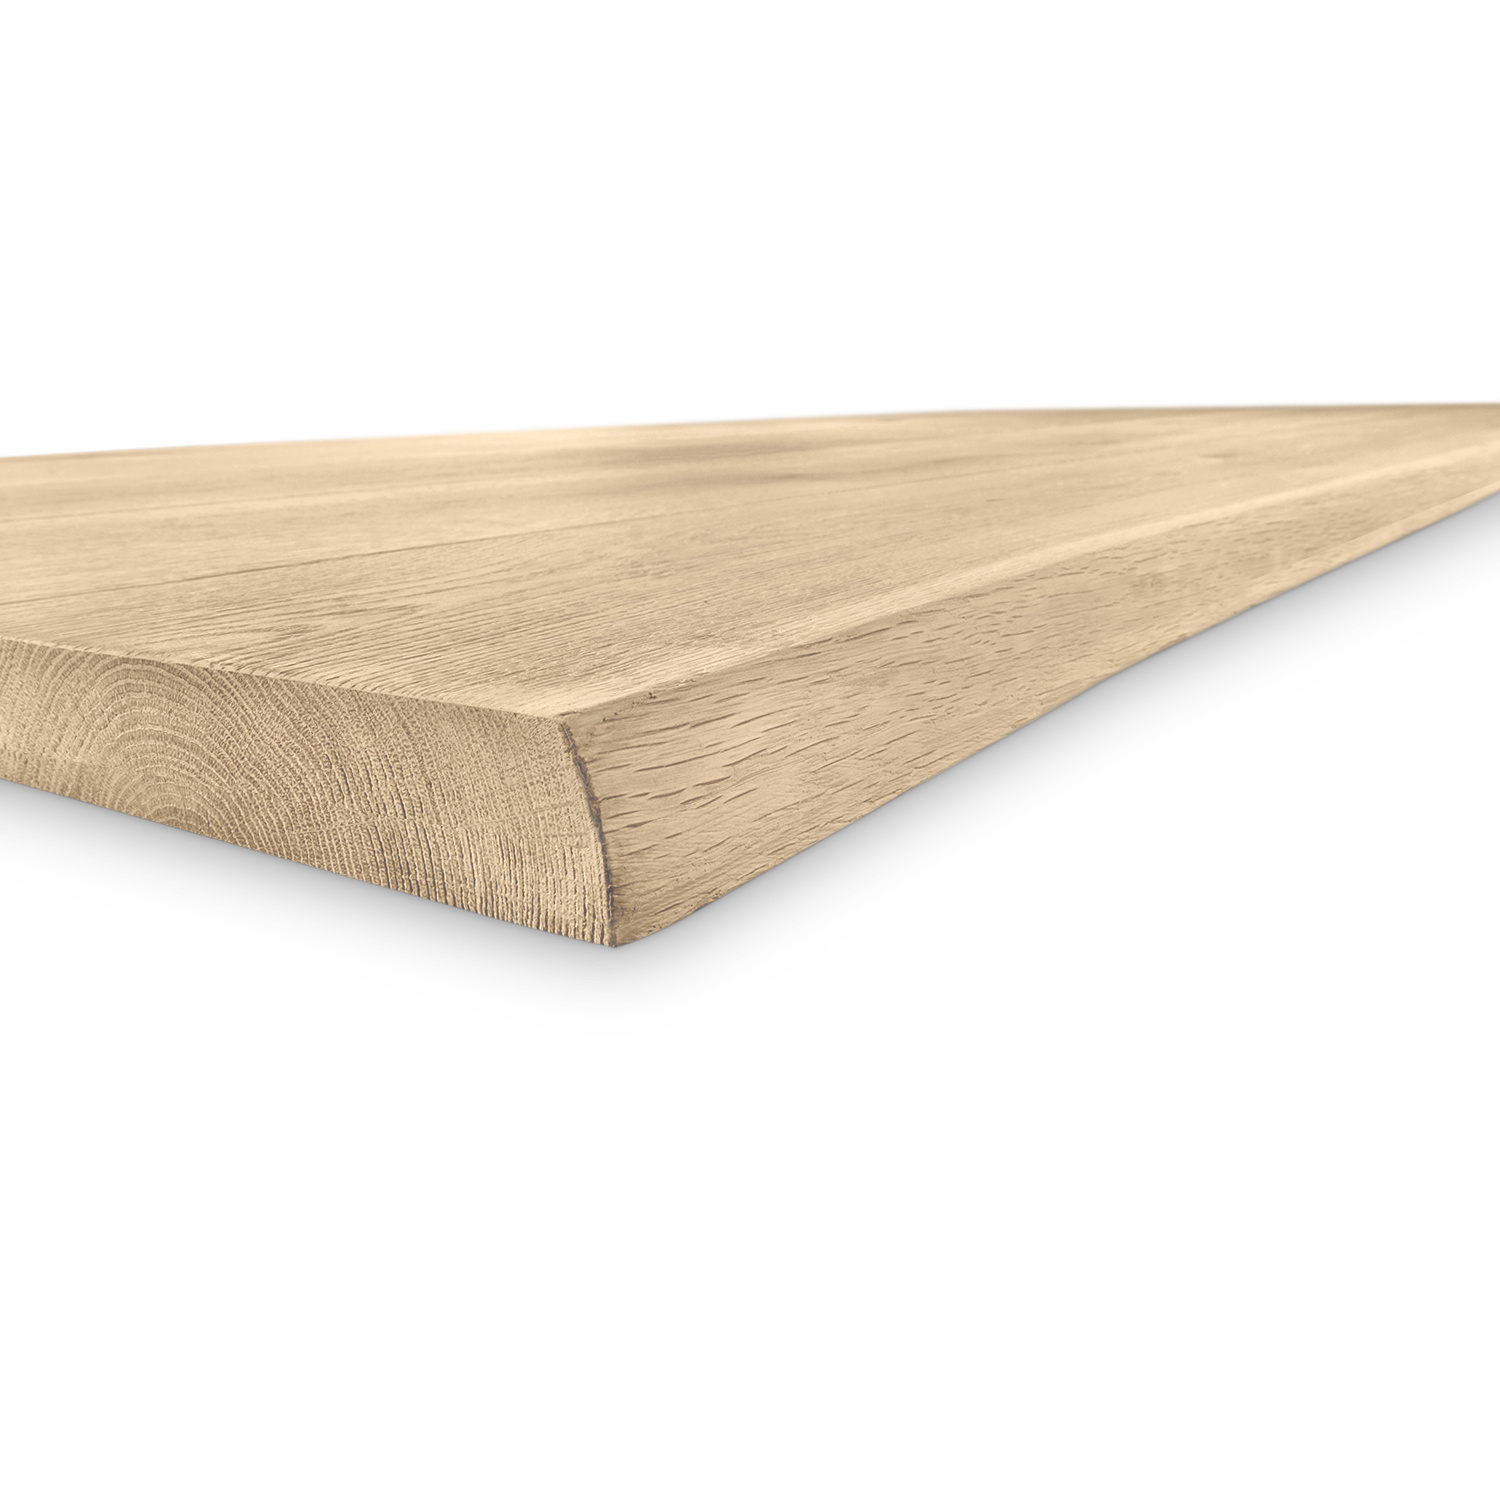  Tischplatte Wildeiche baumkante - 3 cm dick - verschiedene Größen -Asteiche (rustikal) - Eiche Tischplatte mit  natürlichen Baumkant - Verleimt & künstlich getrocknet (HF 8-12%)